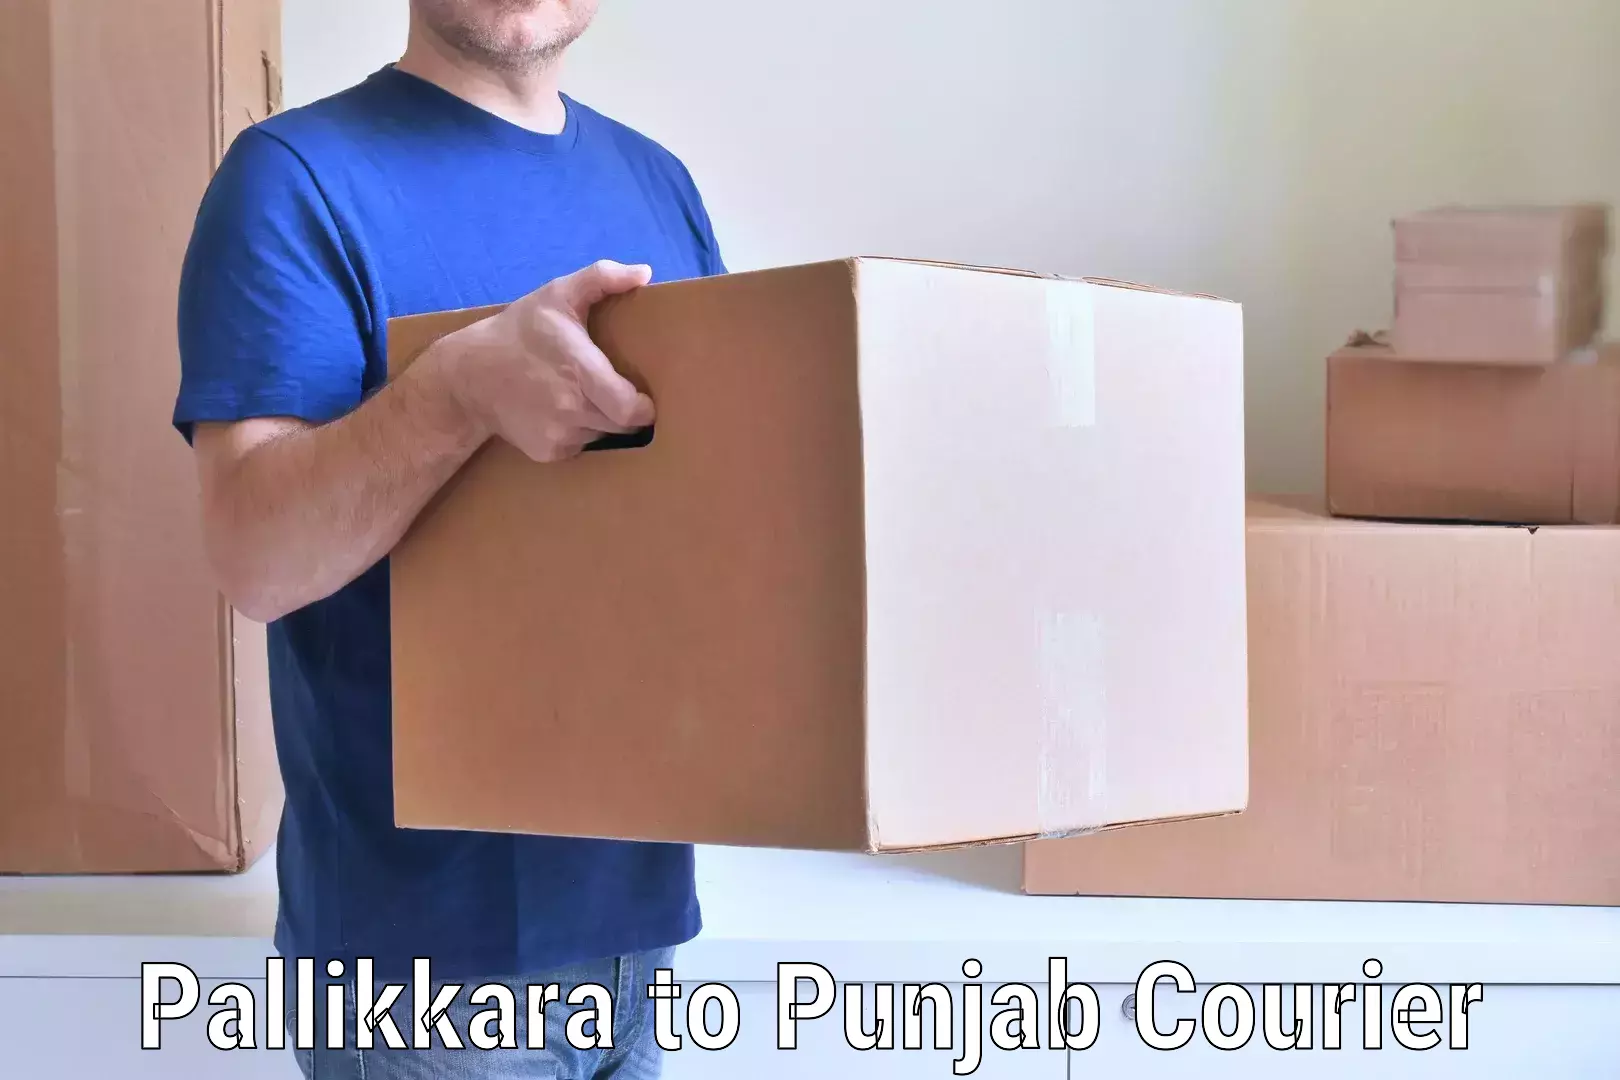 Furniture shipping services Pallikkara to Samana